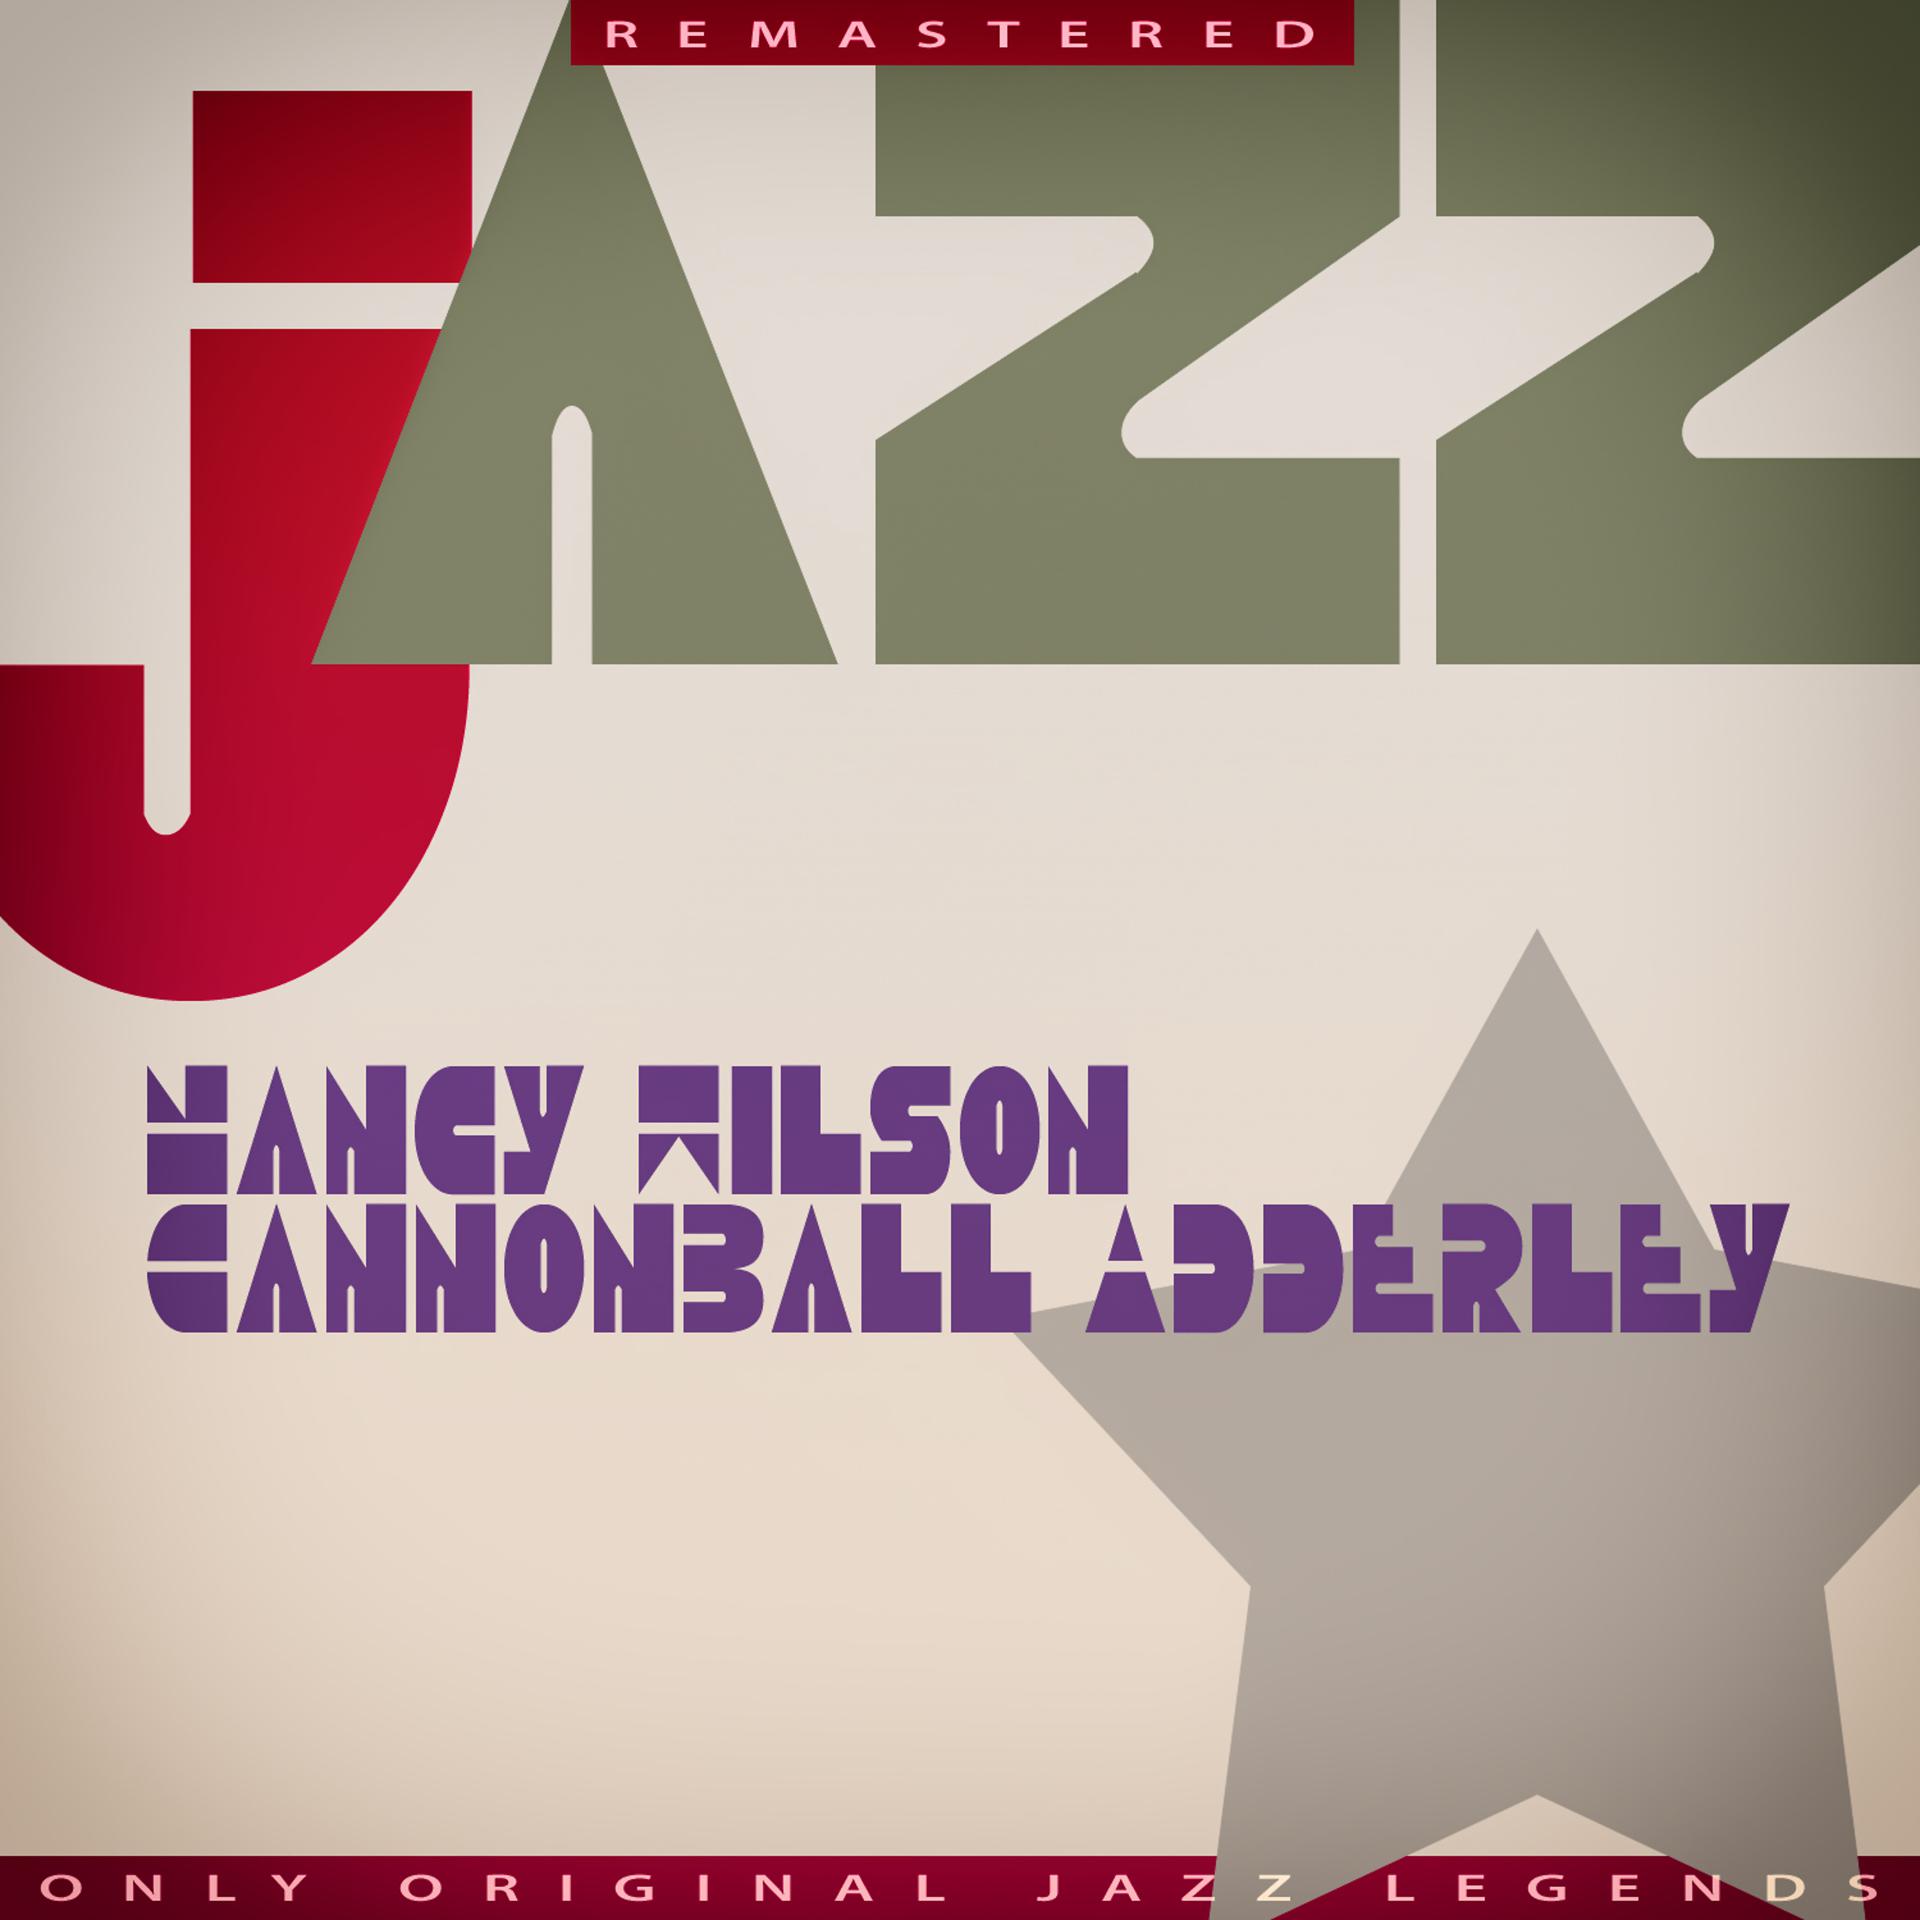 Постер альбома Nancy Wilson/Cannonball Adderley